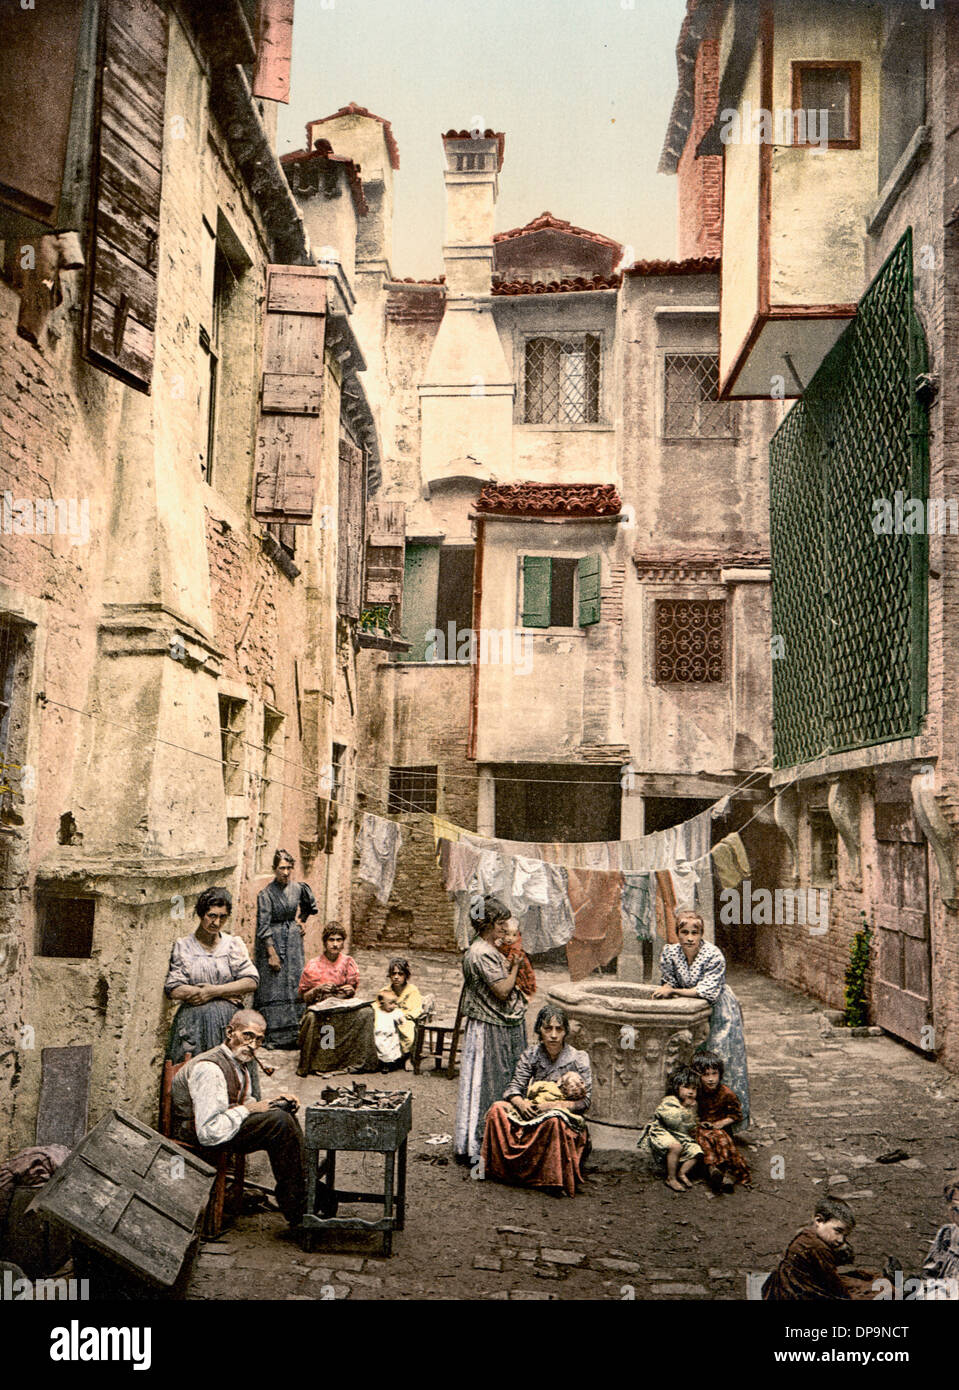 Il vecchio cortile veneziano, Venezia, Italia, circa 1900 Foto Stock